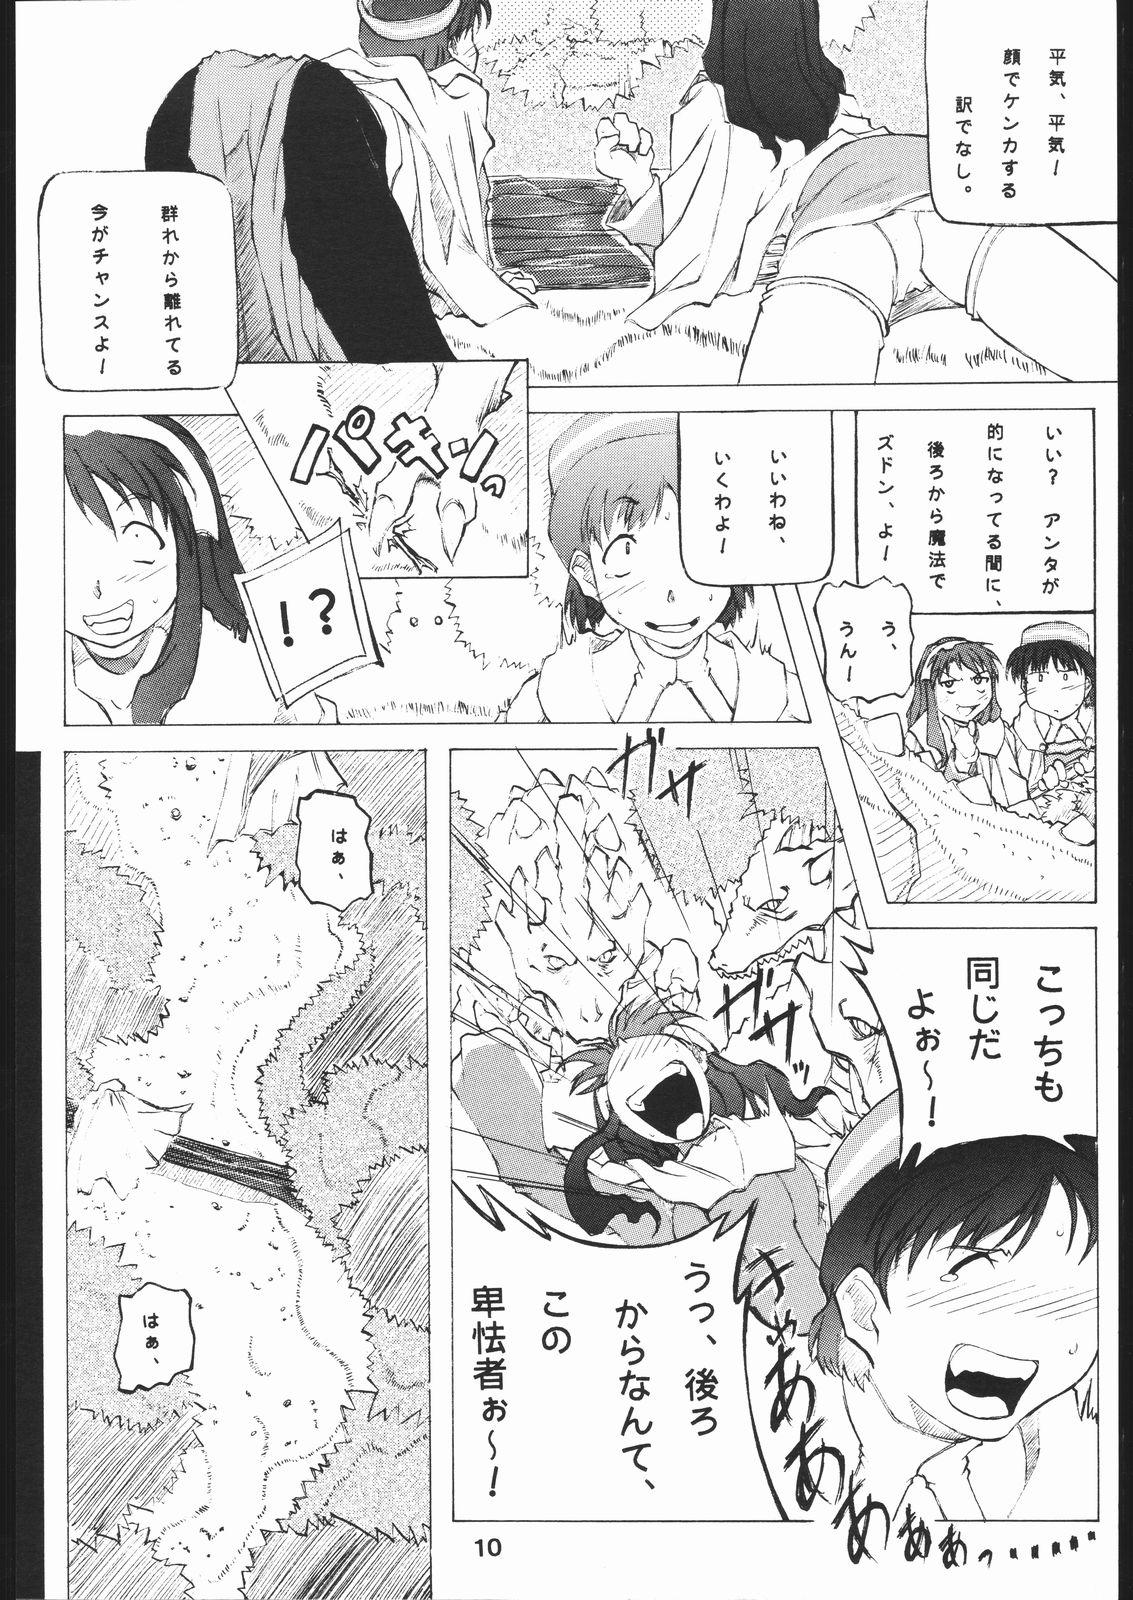 Mallu yoru no renkinjyutsu Chica - Page 9